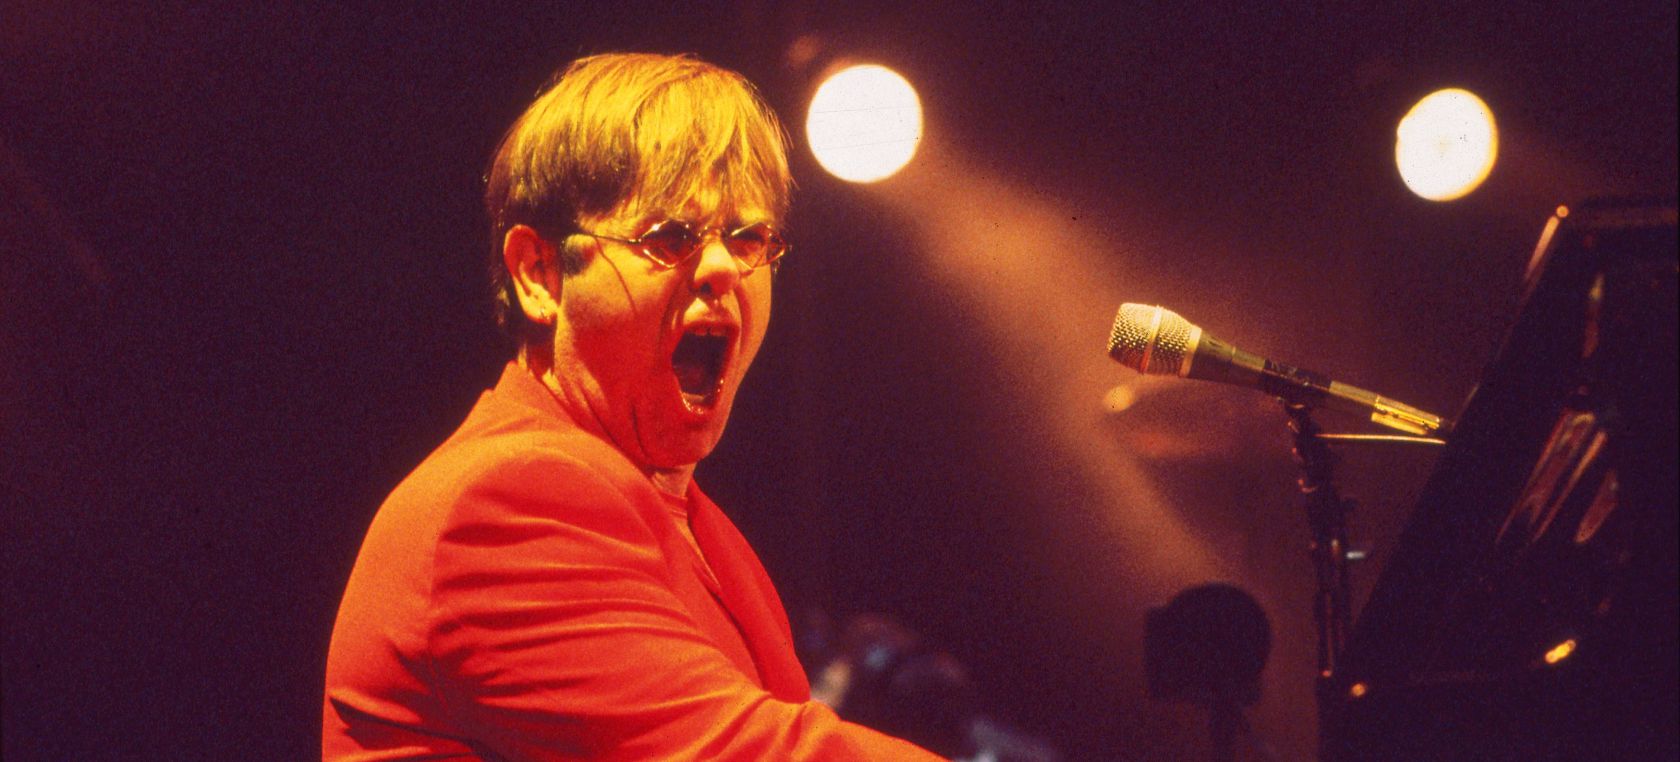 La historia de ‘Sacrifice’, la canción más triste de Elton John que nació de una ruptura amorosa